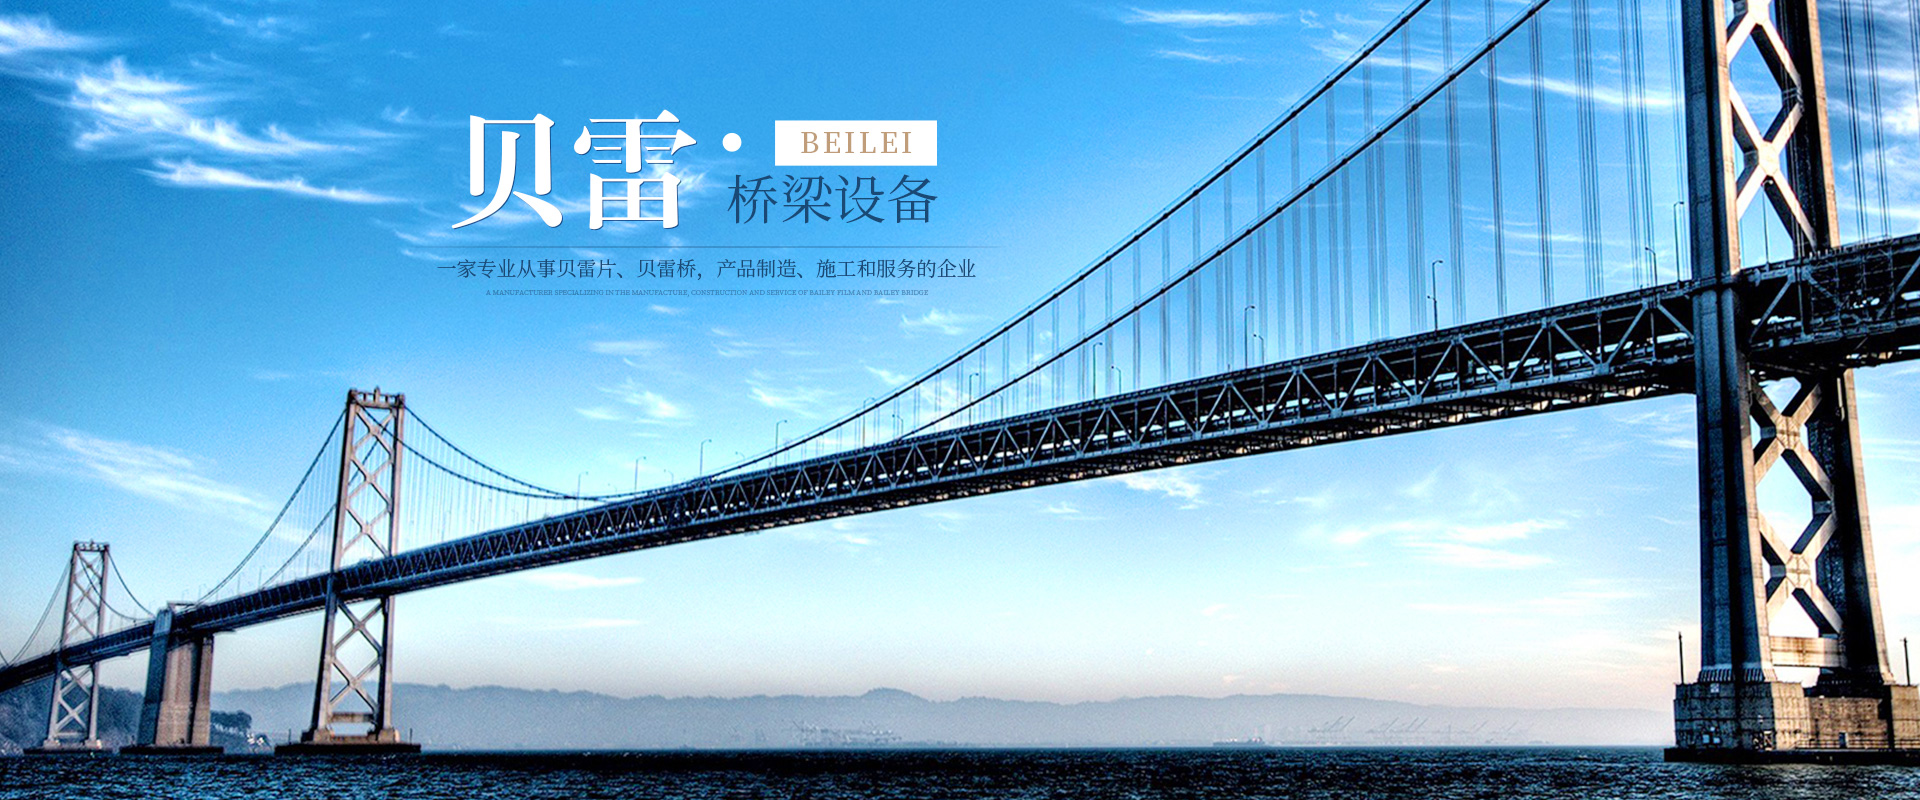 郴州贝雷科技钢结构有限公司_郴州贝雷片|贝雷桥|钢桥配件|贝雷销生产